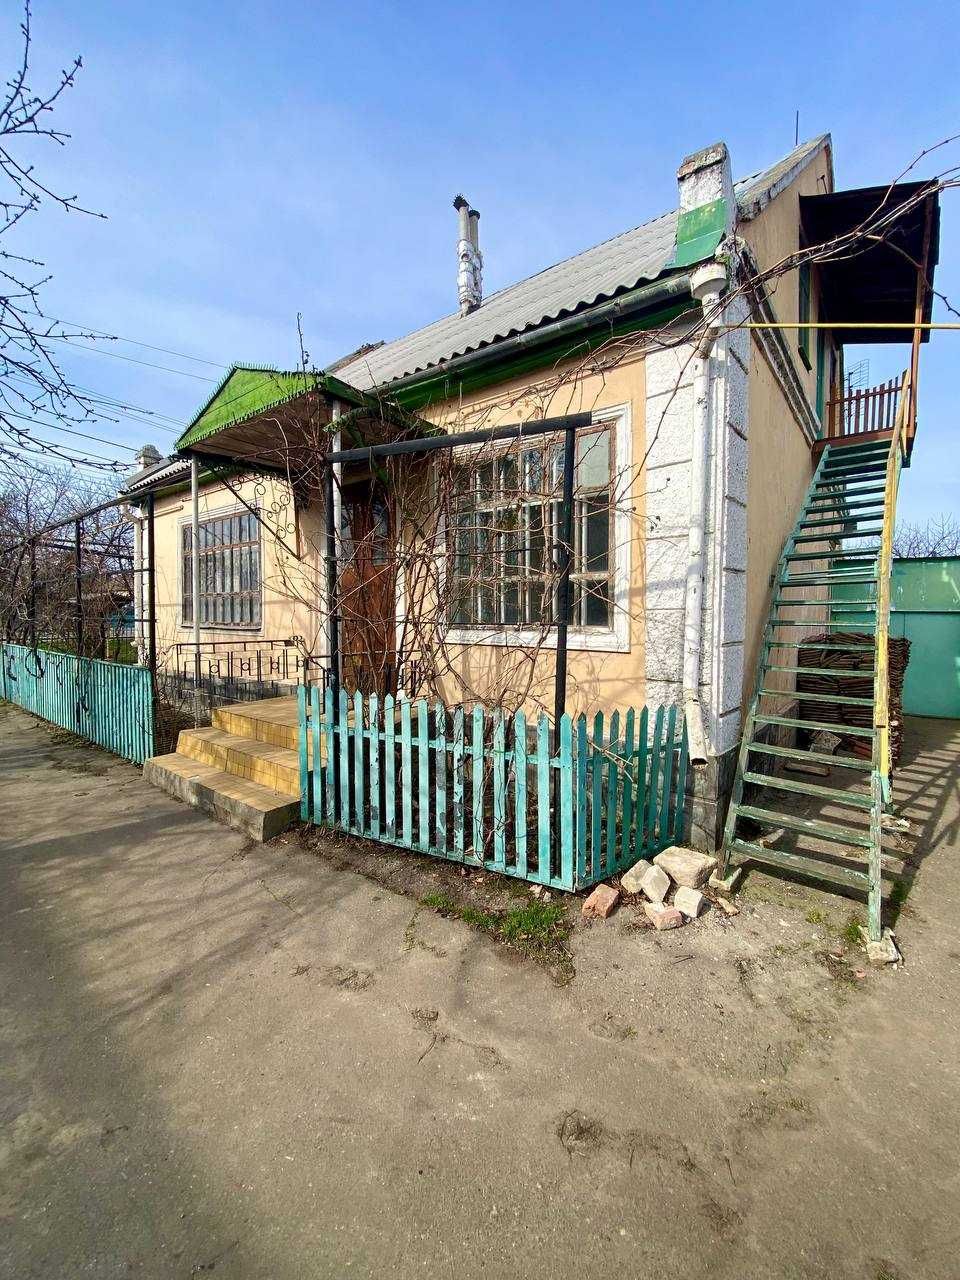 Продам крепкий хозяйский дом в с.Малодолинское